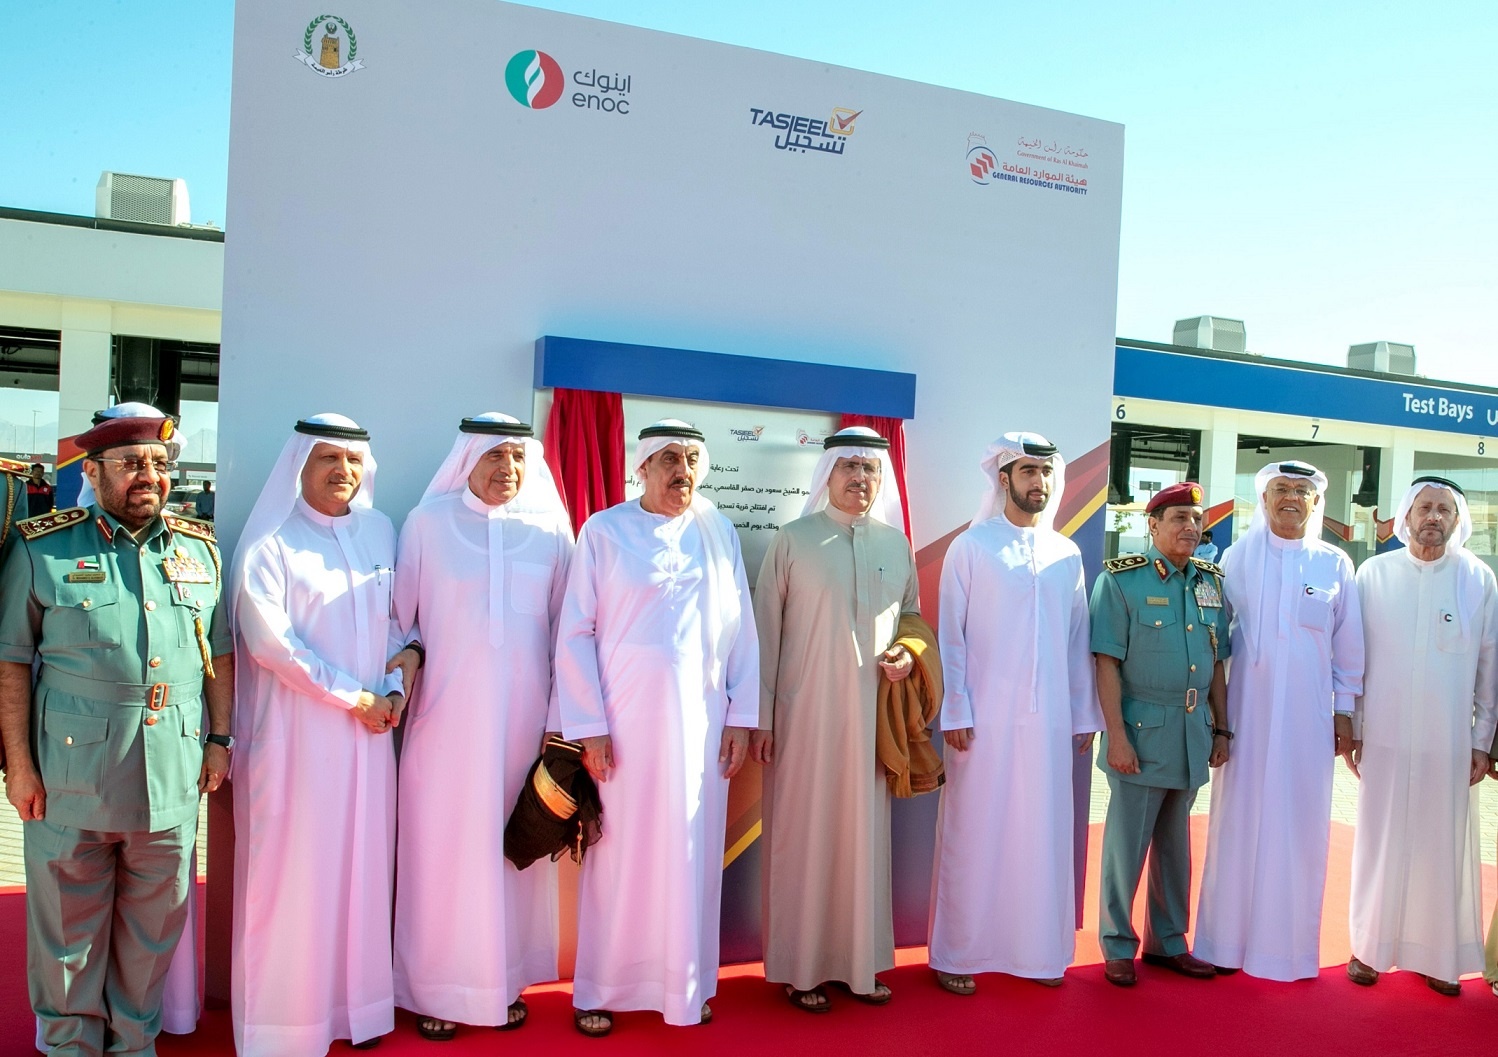 ENOC Opens Largest Tasjeel Auto Village in the UAE